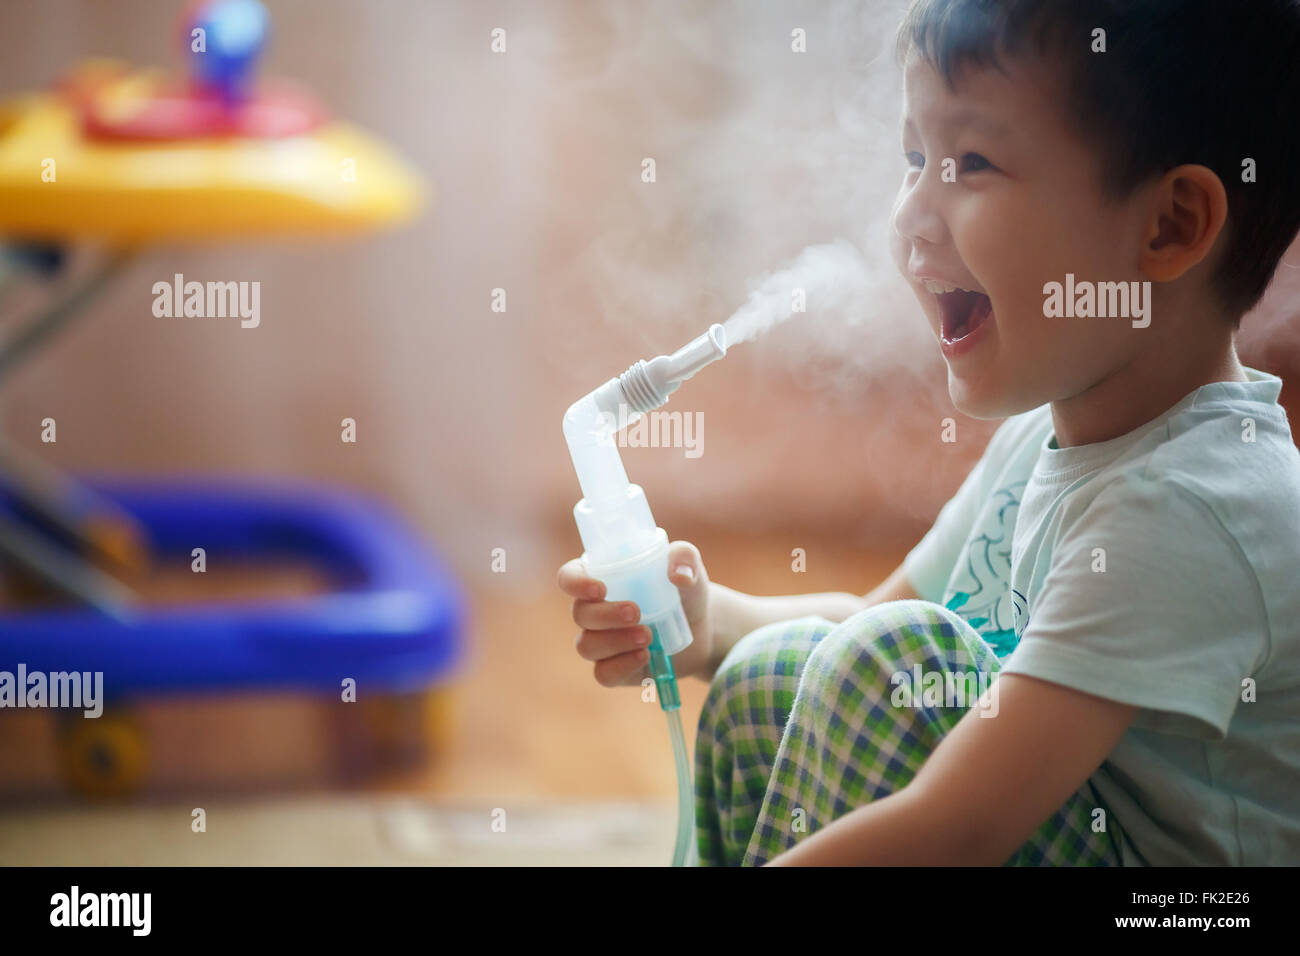 Kleiner Junge macht Inhalation zu Hause, Einnahme von Medikamenten, Bronchien. Ausatmen Dampf durch das Rohr. Stockfoto